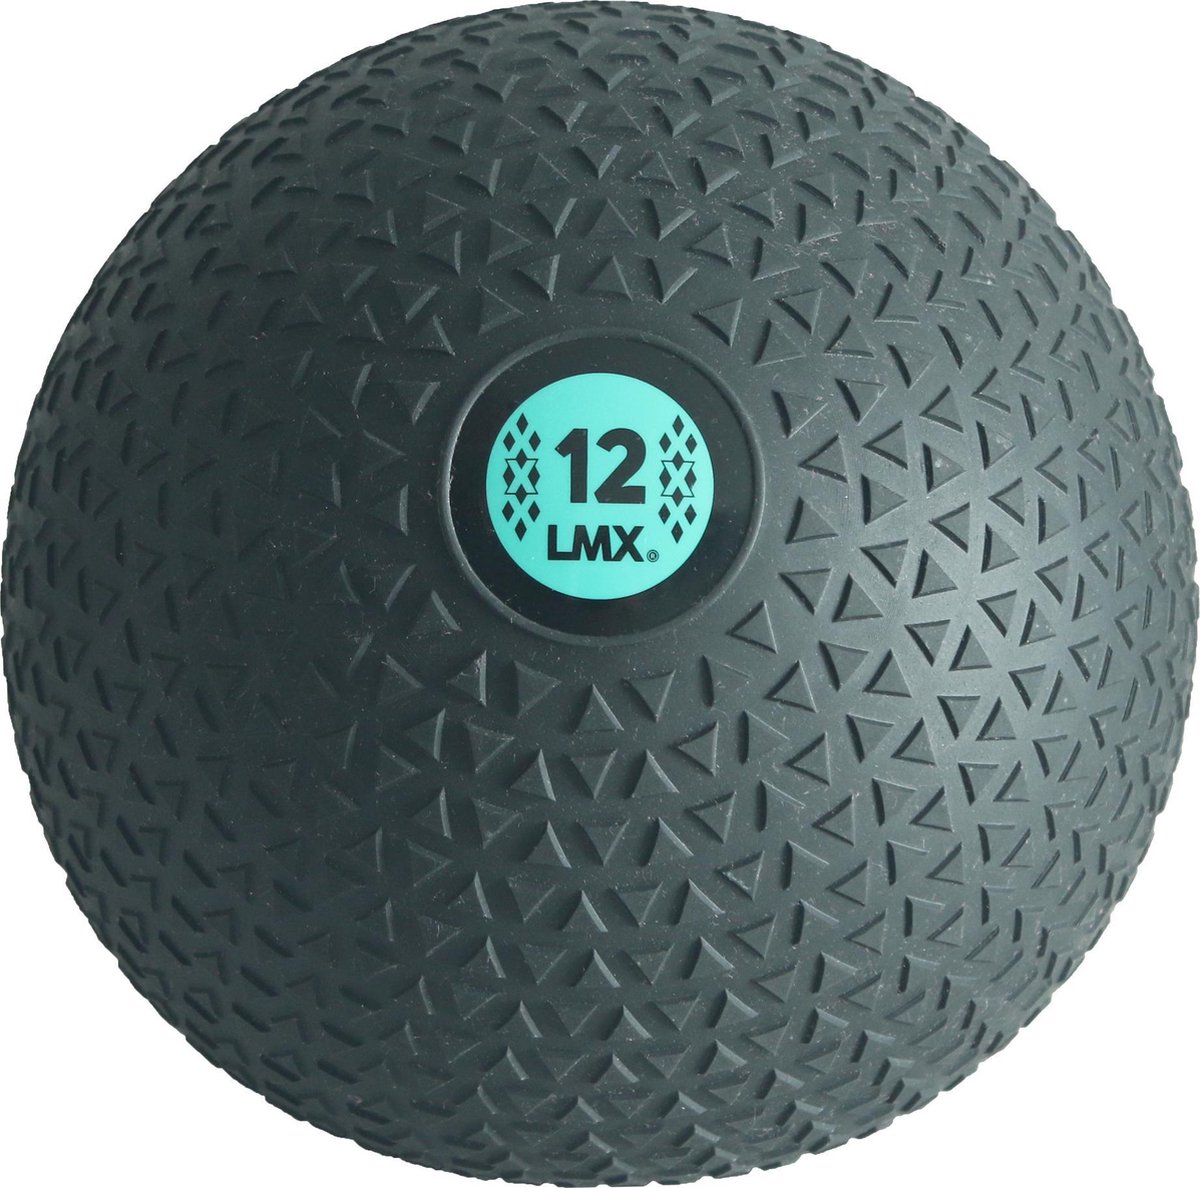 Slam ball 12 kg - zwart